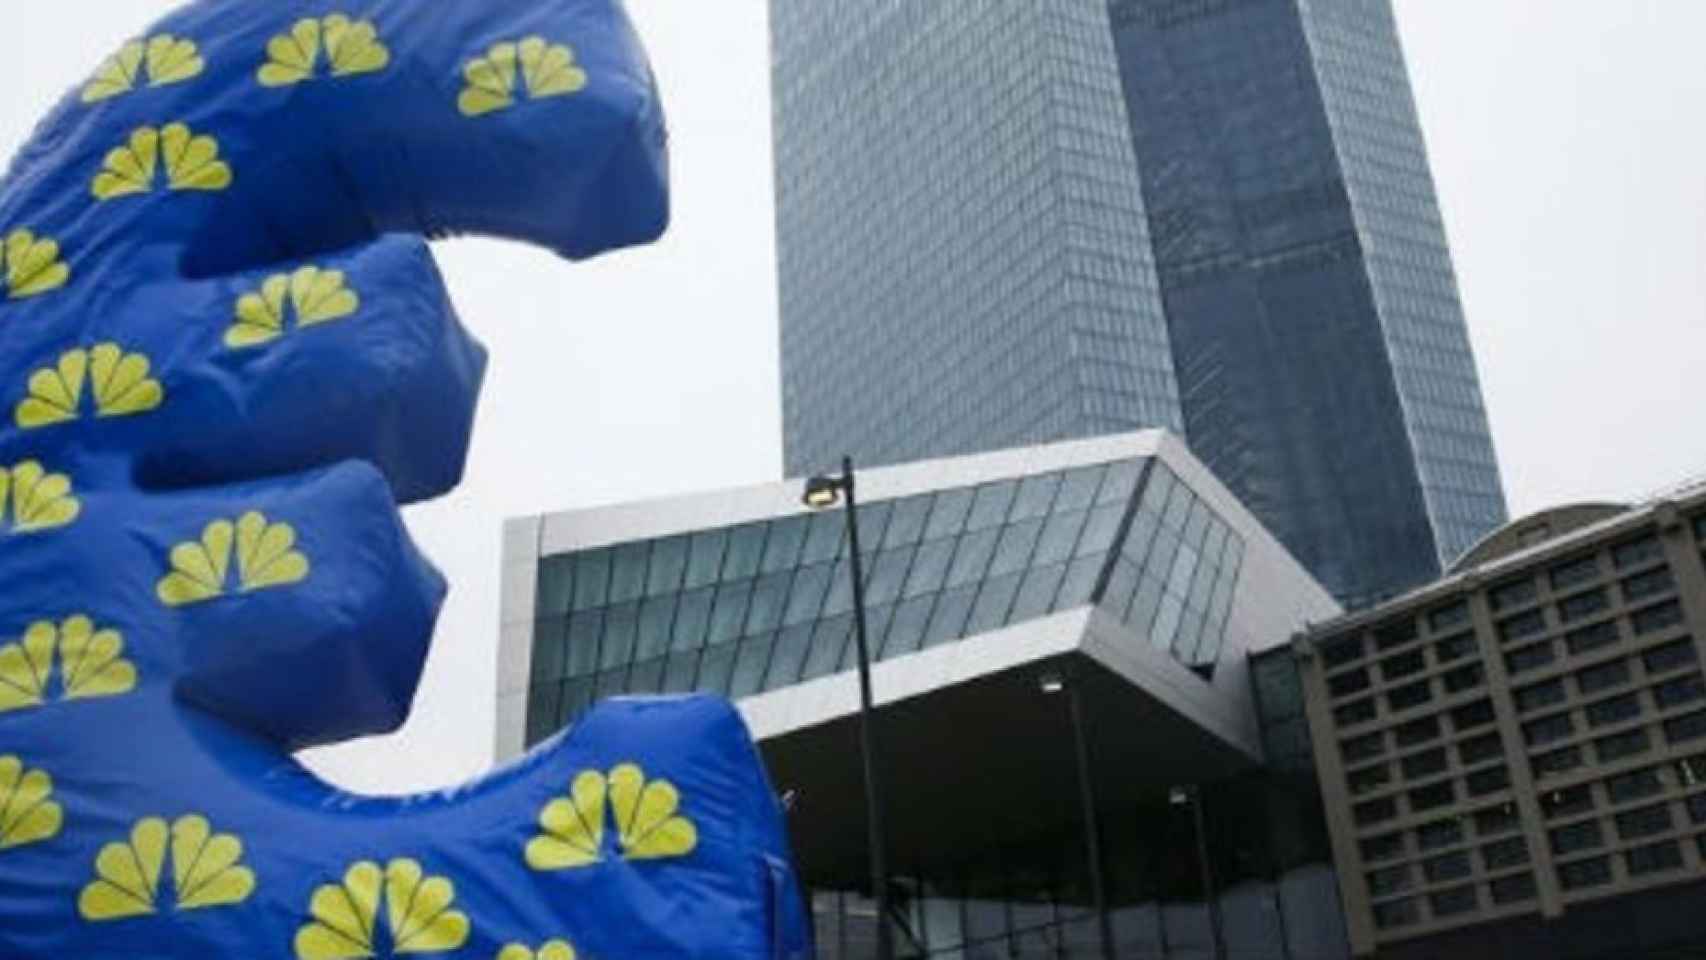 El BCE prepara un nuevo índice de referencia para 2020 tras fracasar la reforma del Euríbor